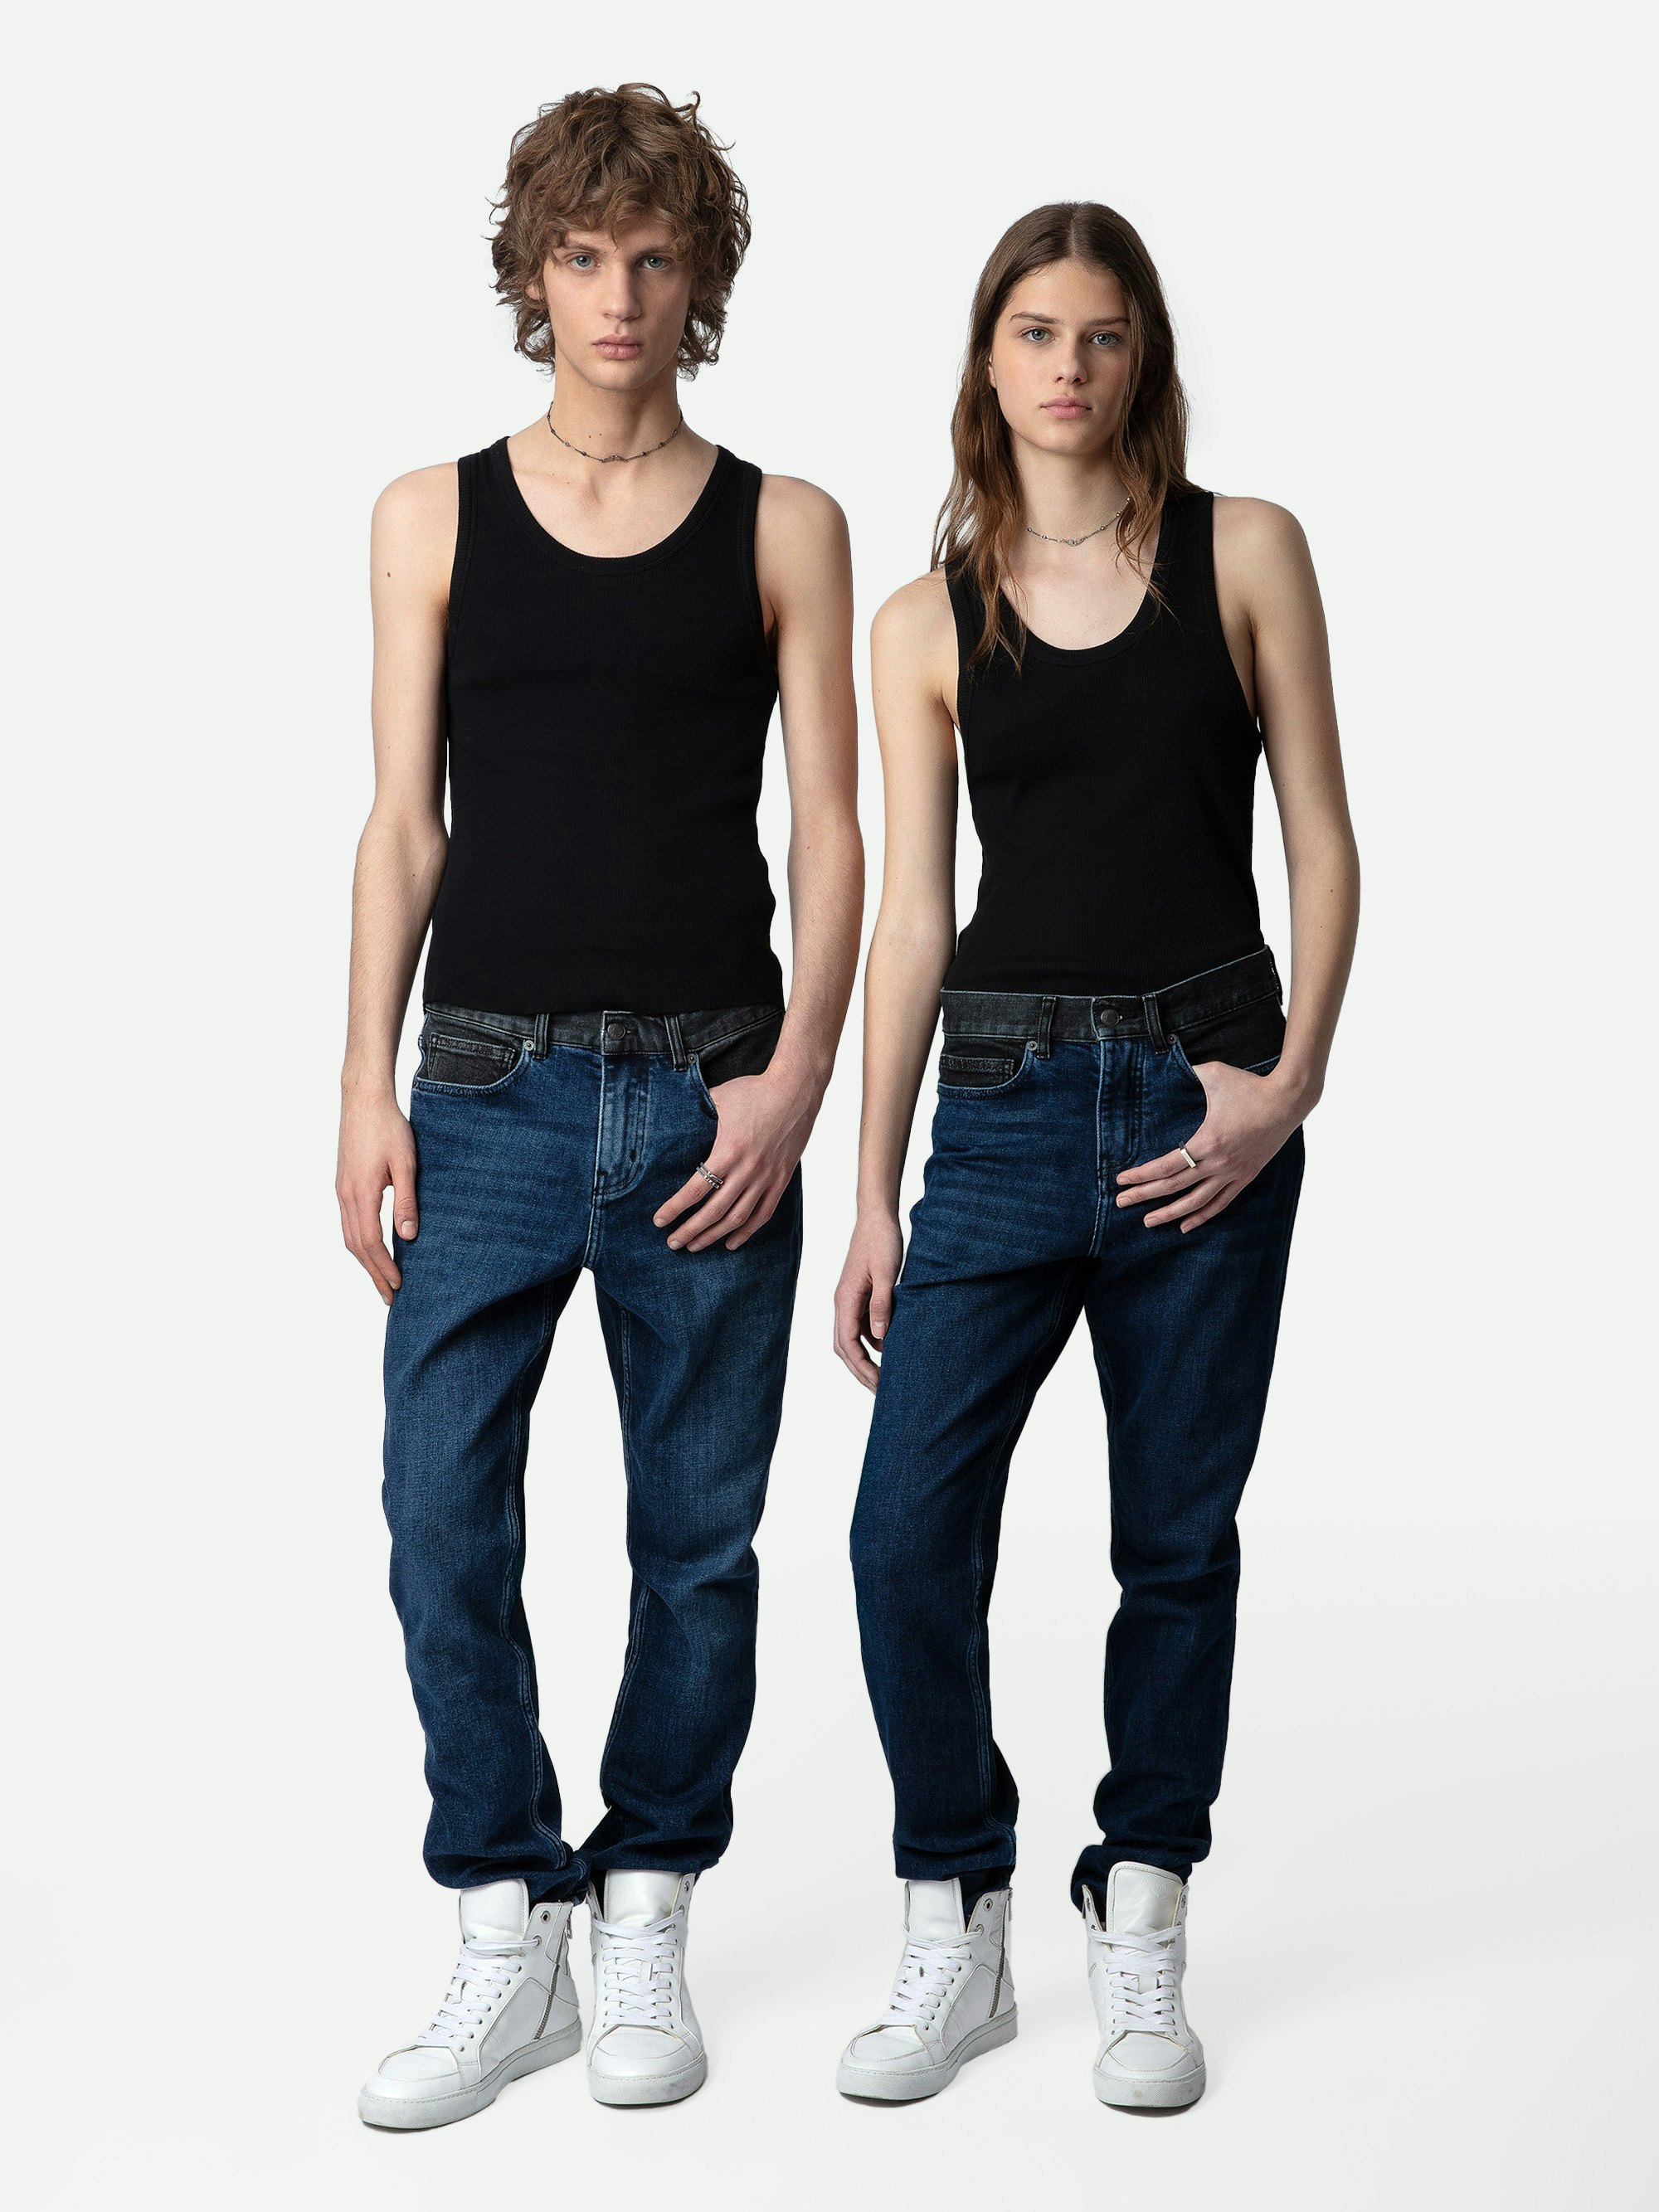 Camiseta de Tirantes Camille - Camiseta de tirantes negra de algodón acanalado con sisas americanas y cuello redondo.